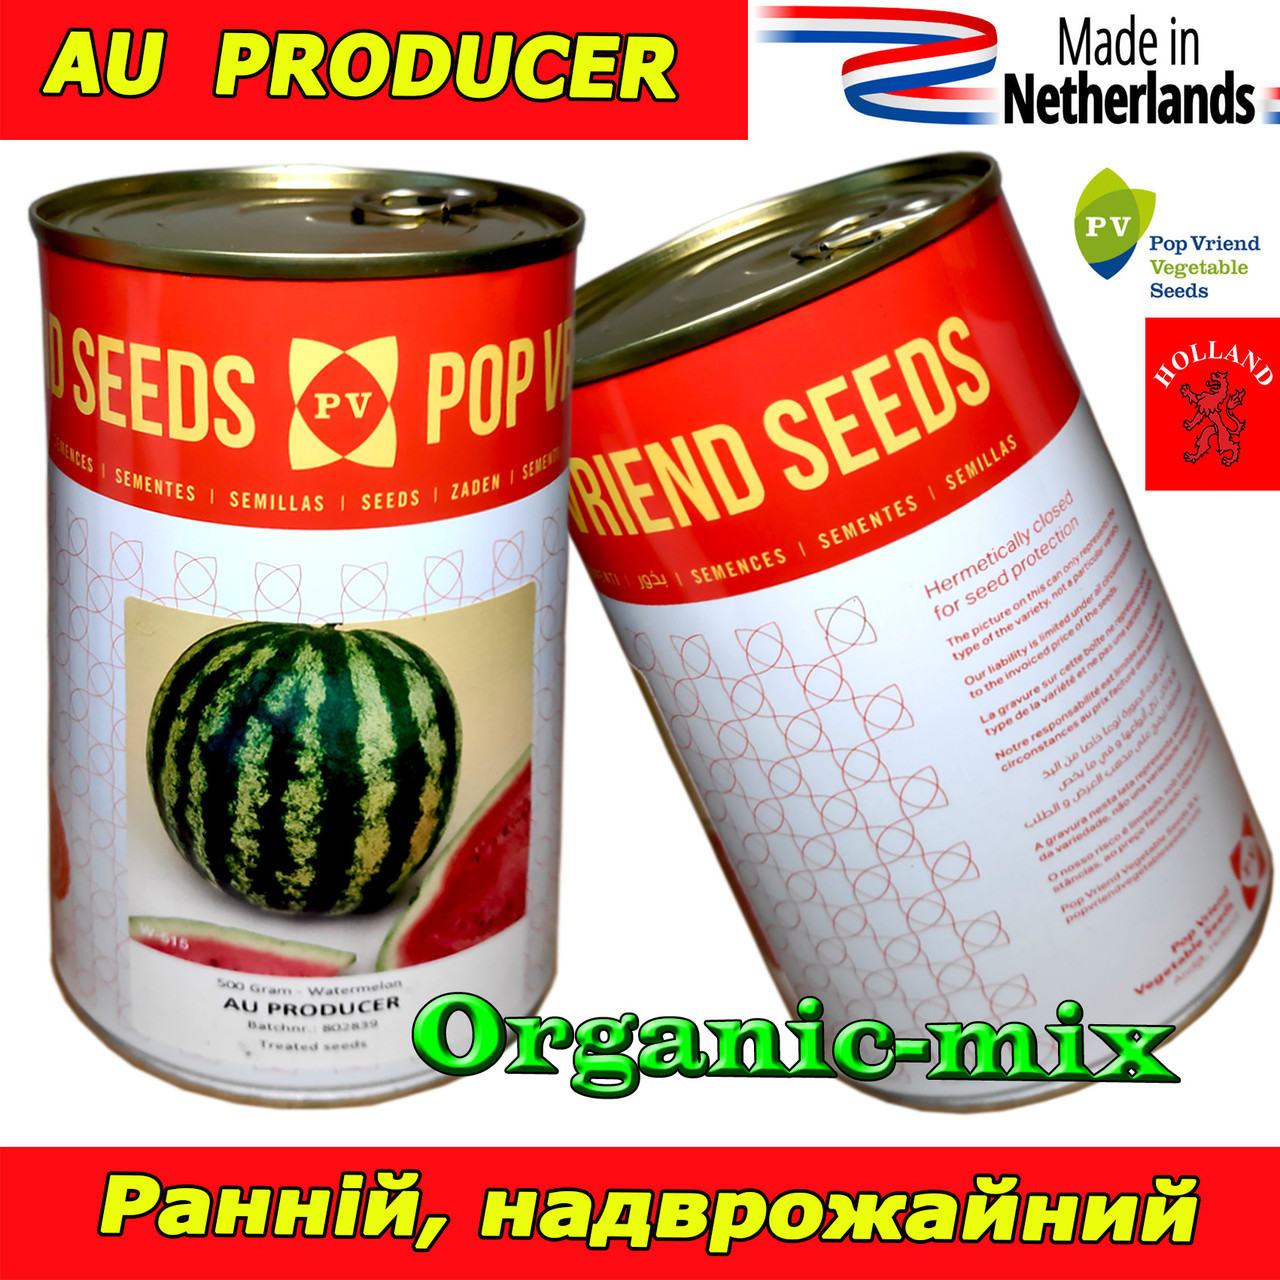 Насіння, надрожайний кавун АУ Продюсер, Рop Vriend Seeds, Нідерланди (Голландія), банка 500 грамів